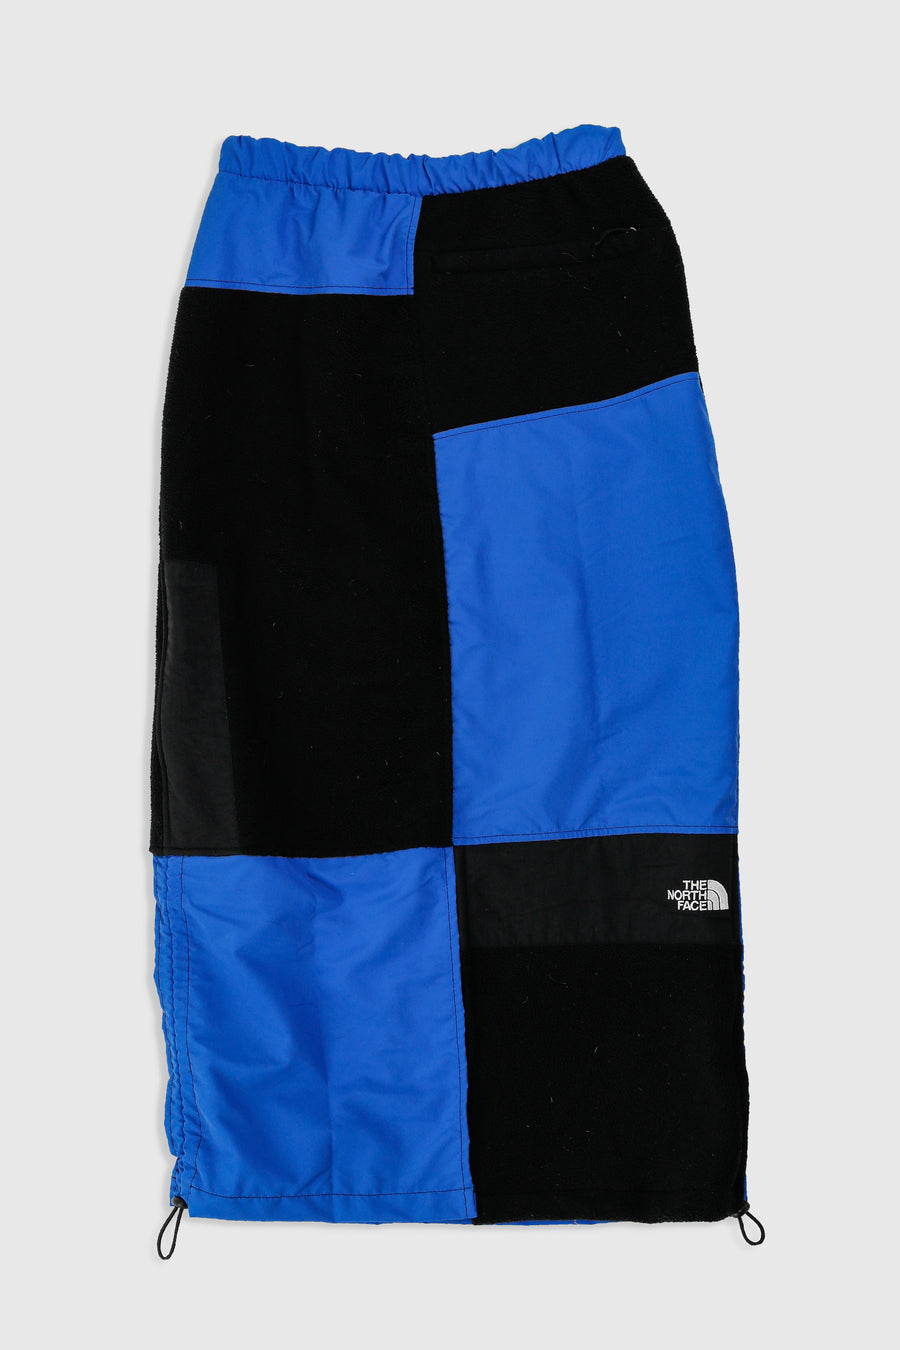 Rework North Face Fleece Long Skirt - XS, S, M, L, XL, XXL